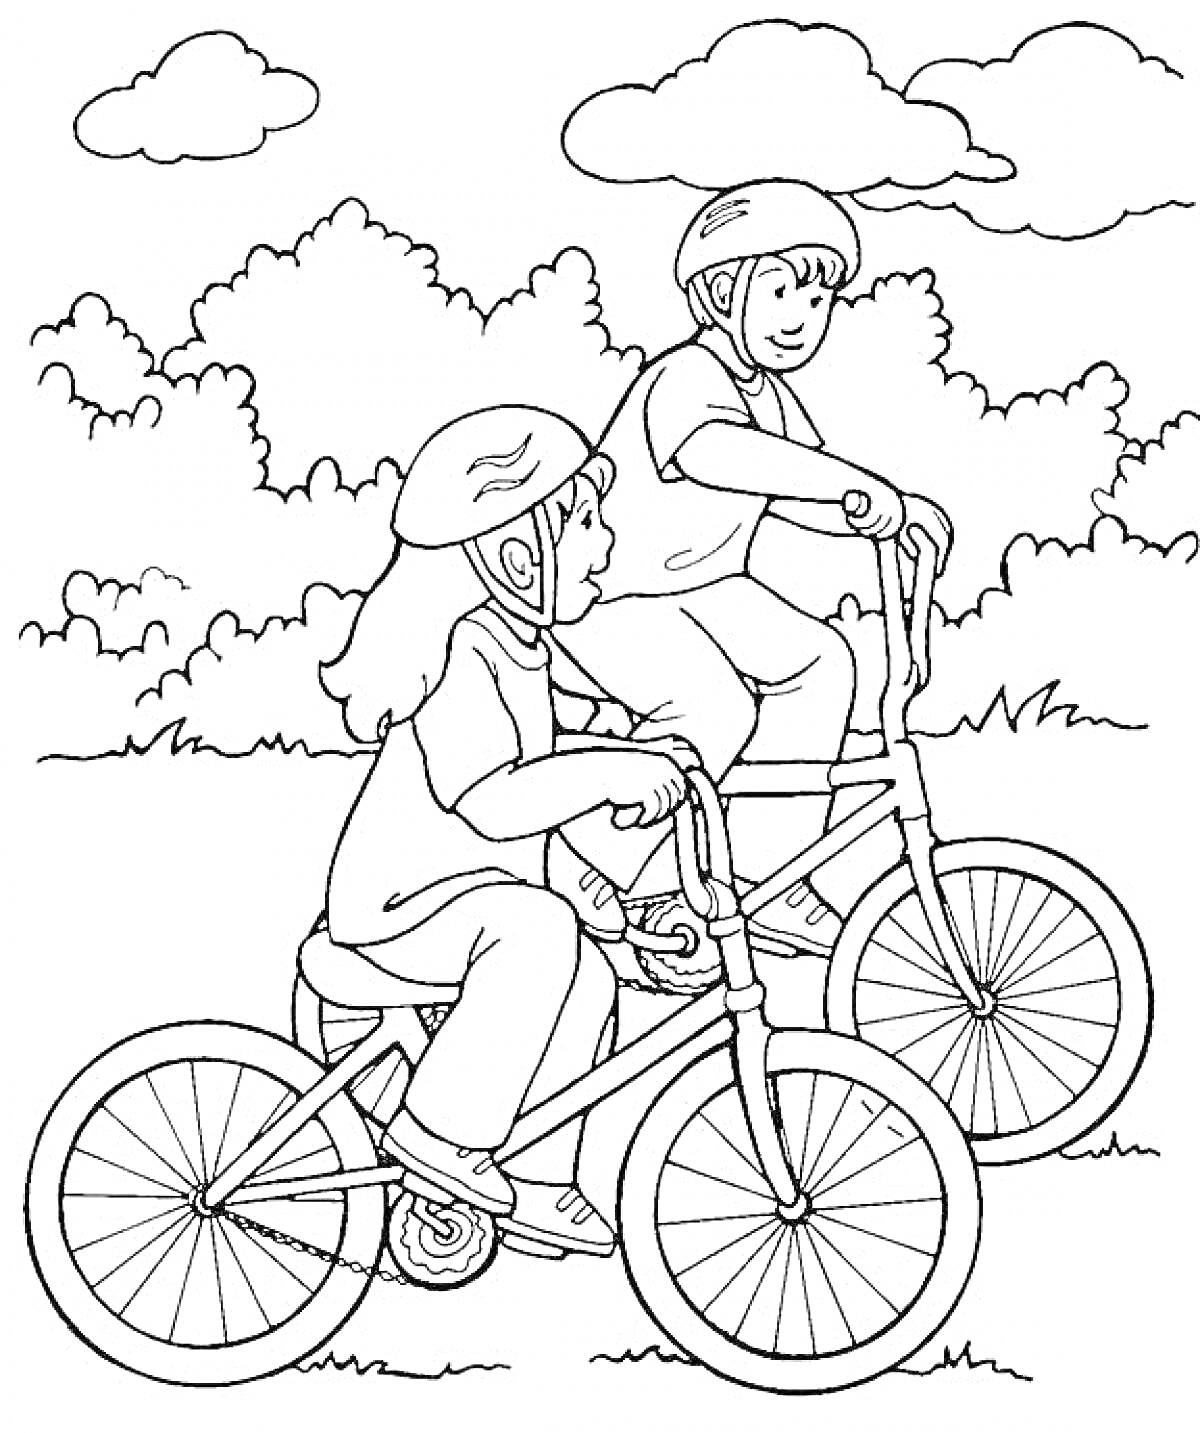 Раскраска Два ребенка на велосипедах в шлемах на фоне деревьев и облаков